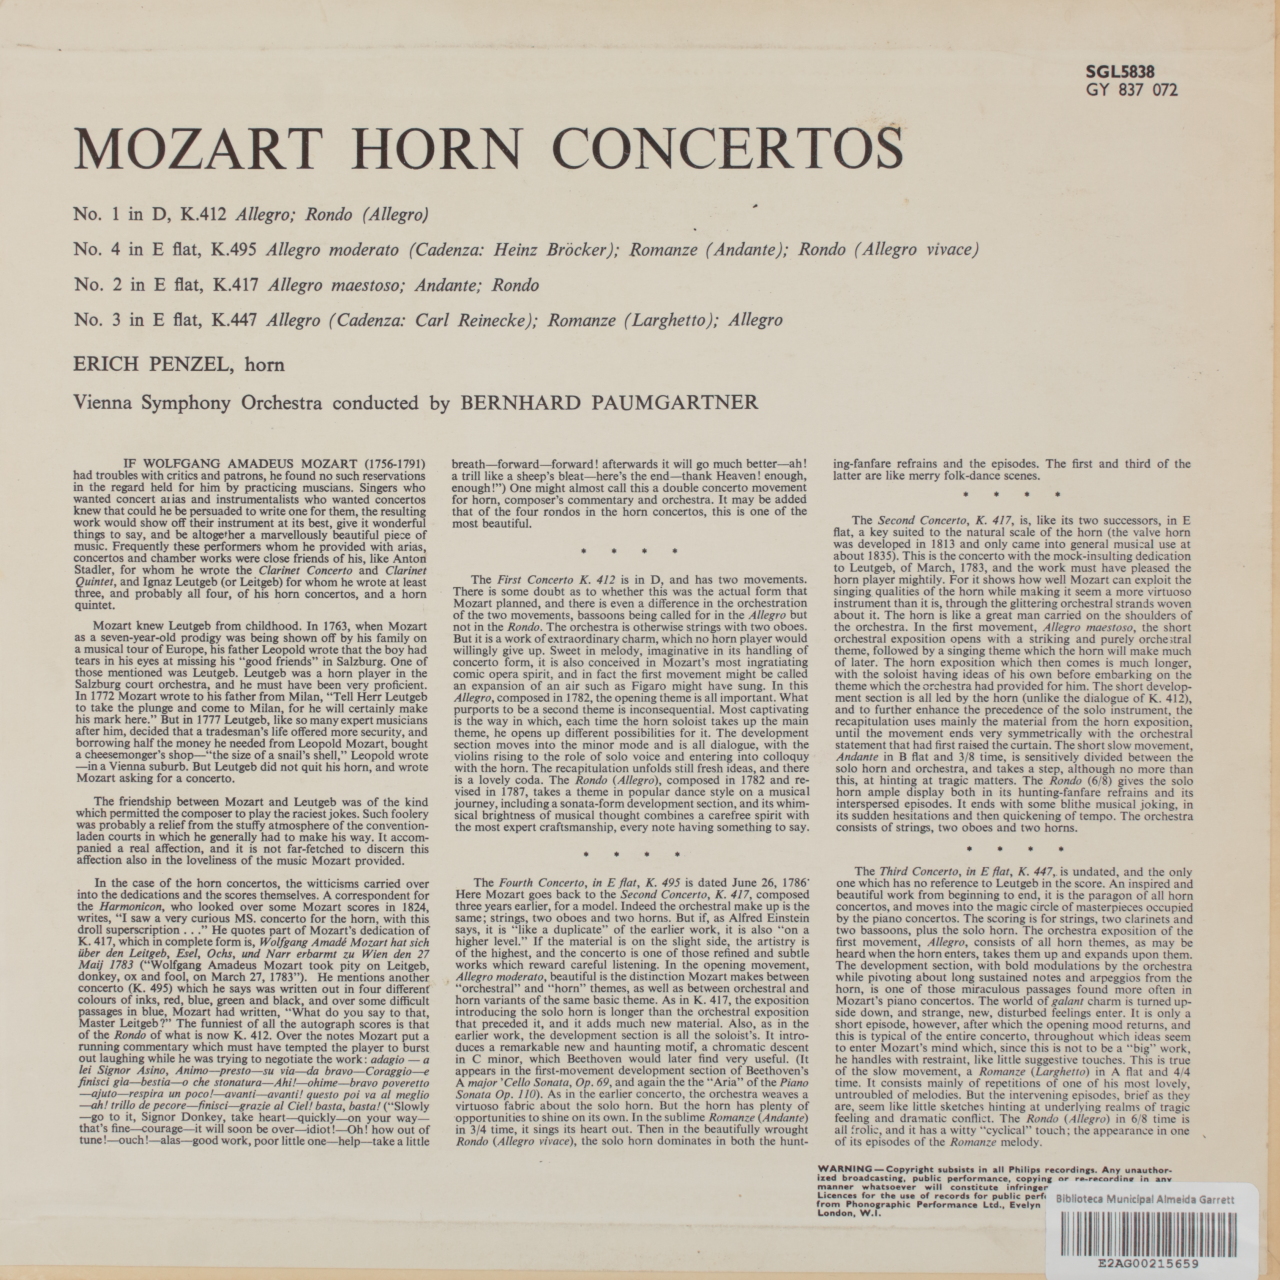 Mozart: The Four Horn Concertos